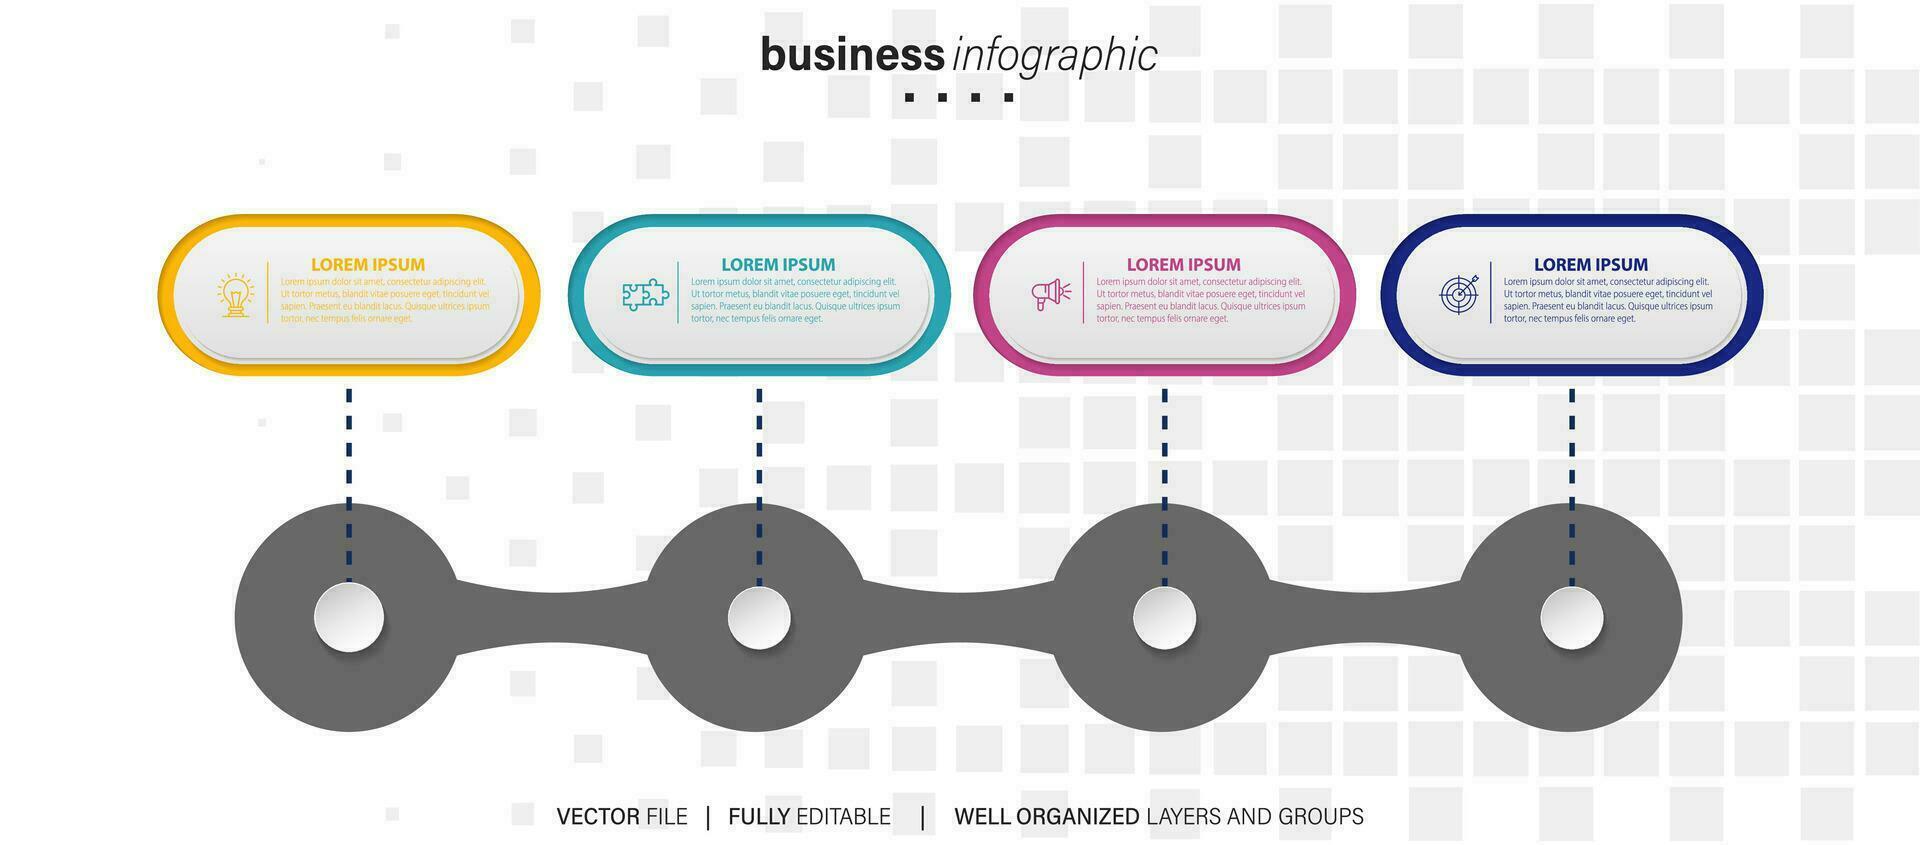 modern 3d infographic sjabloon met 4 stappen. bedrijf cirkel sjabloon met opties voor brochure, diagram, werkstroom, tijdlijn, web ontwerp. vector eps 10